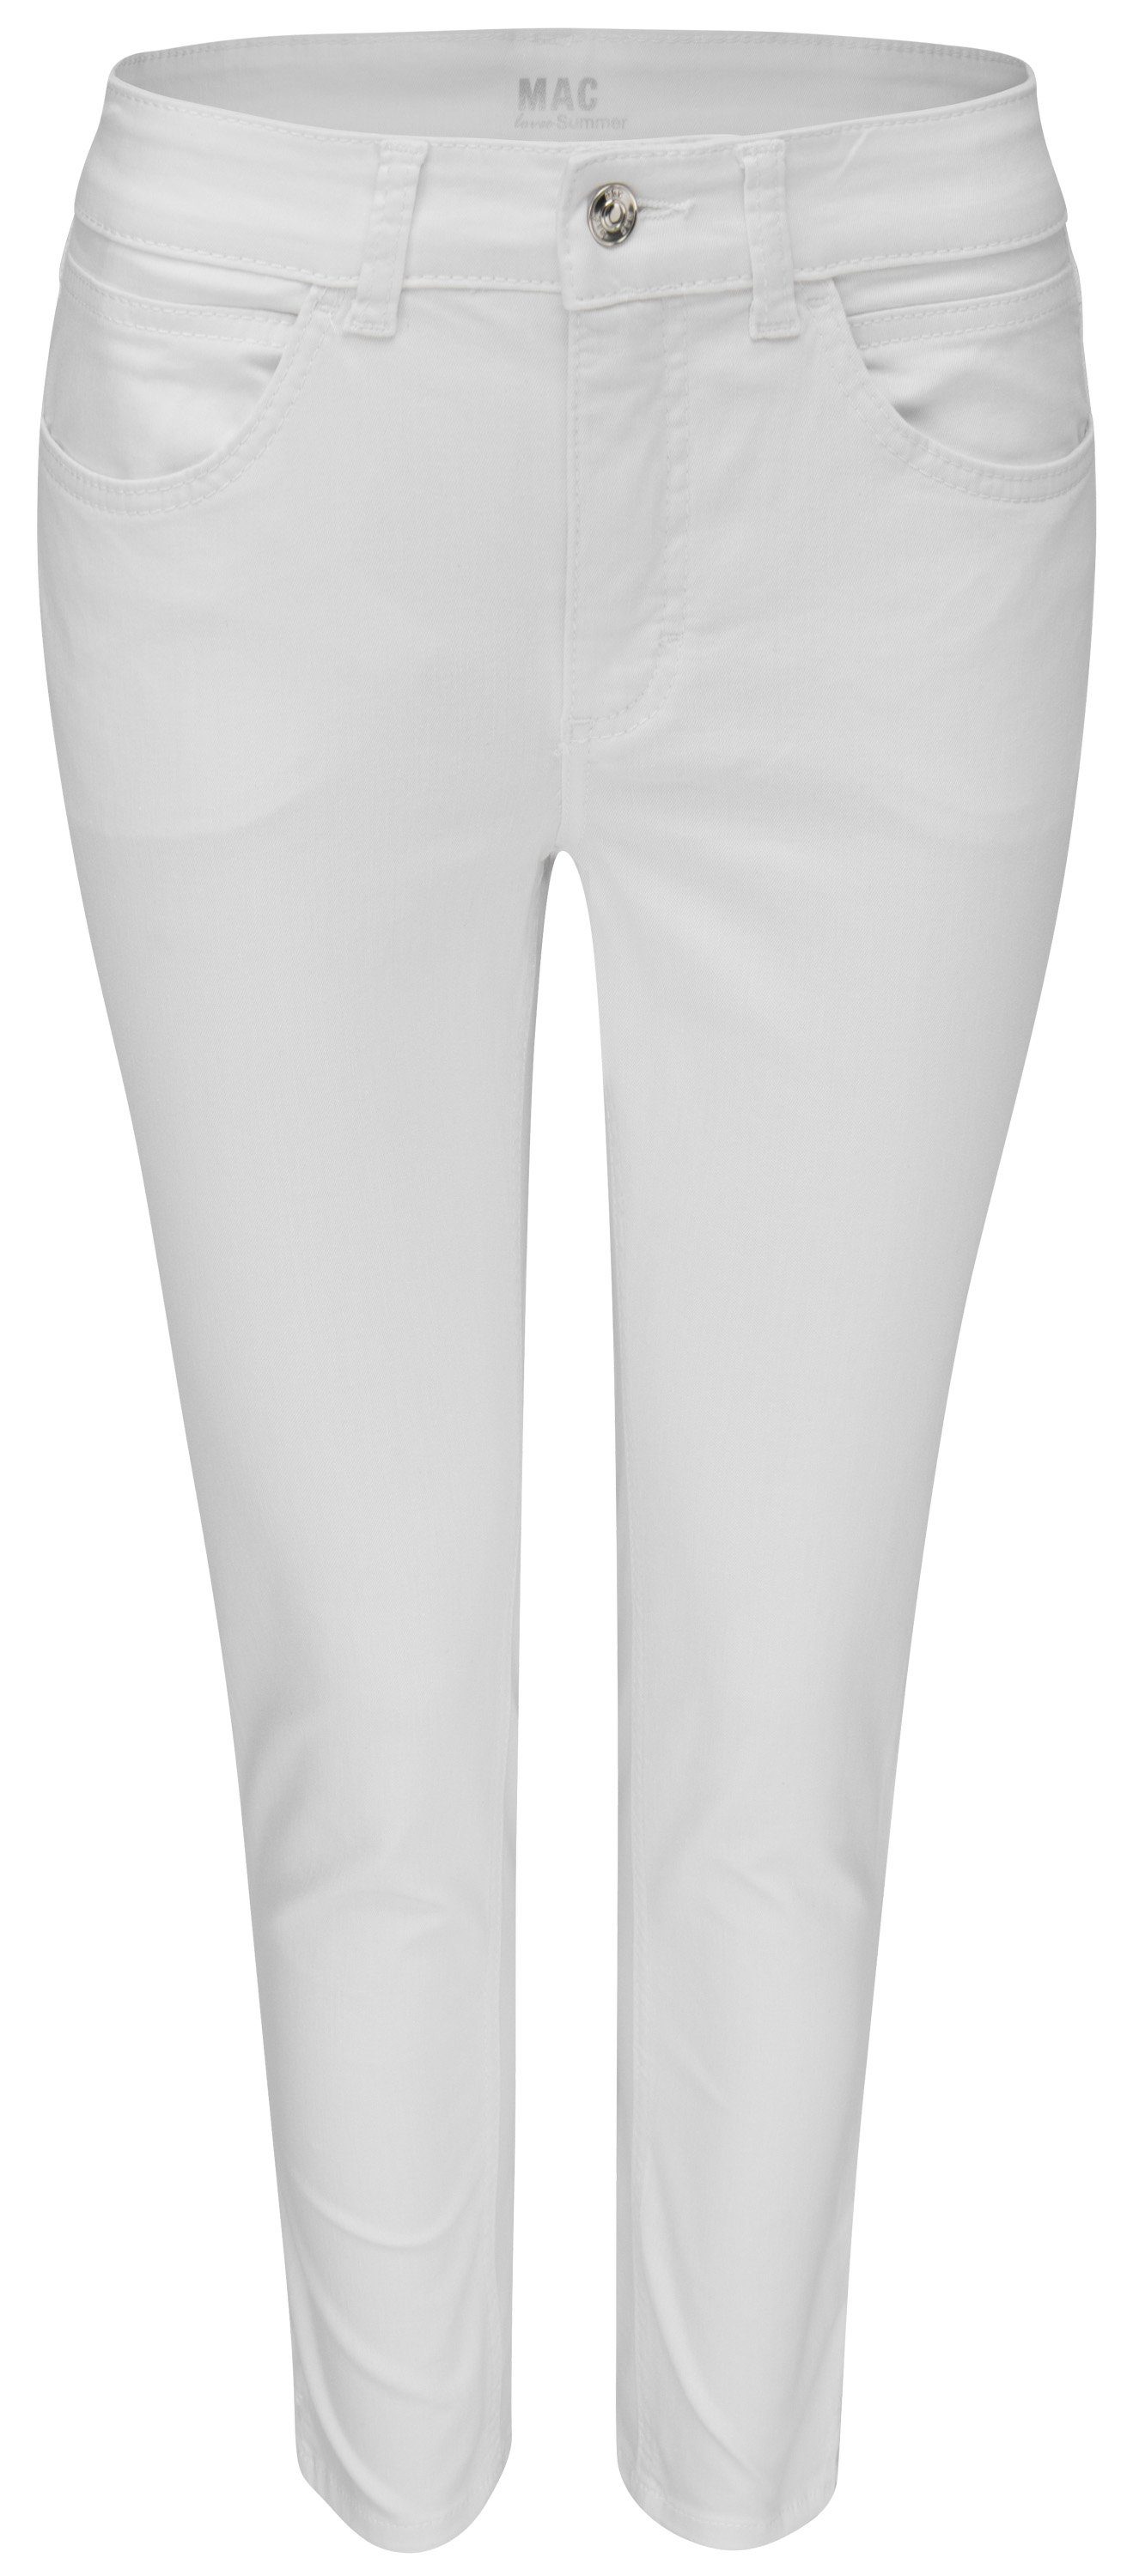 5260-90-0394 white Stretch-Jeans ANGELA D010 7/8 nature MAC MAC denim SUMMER